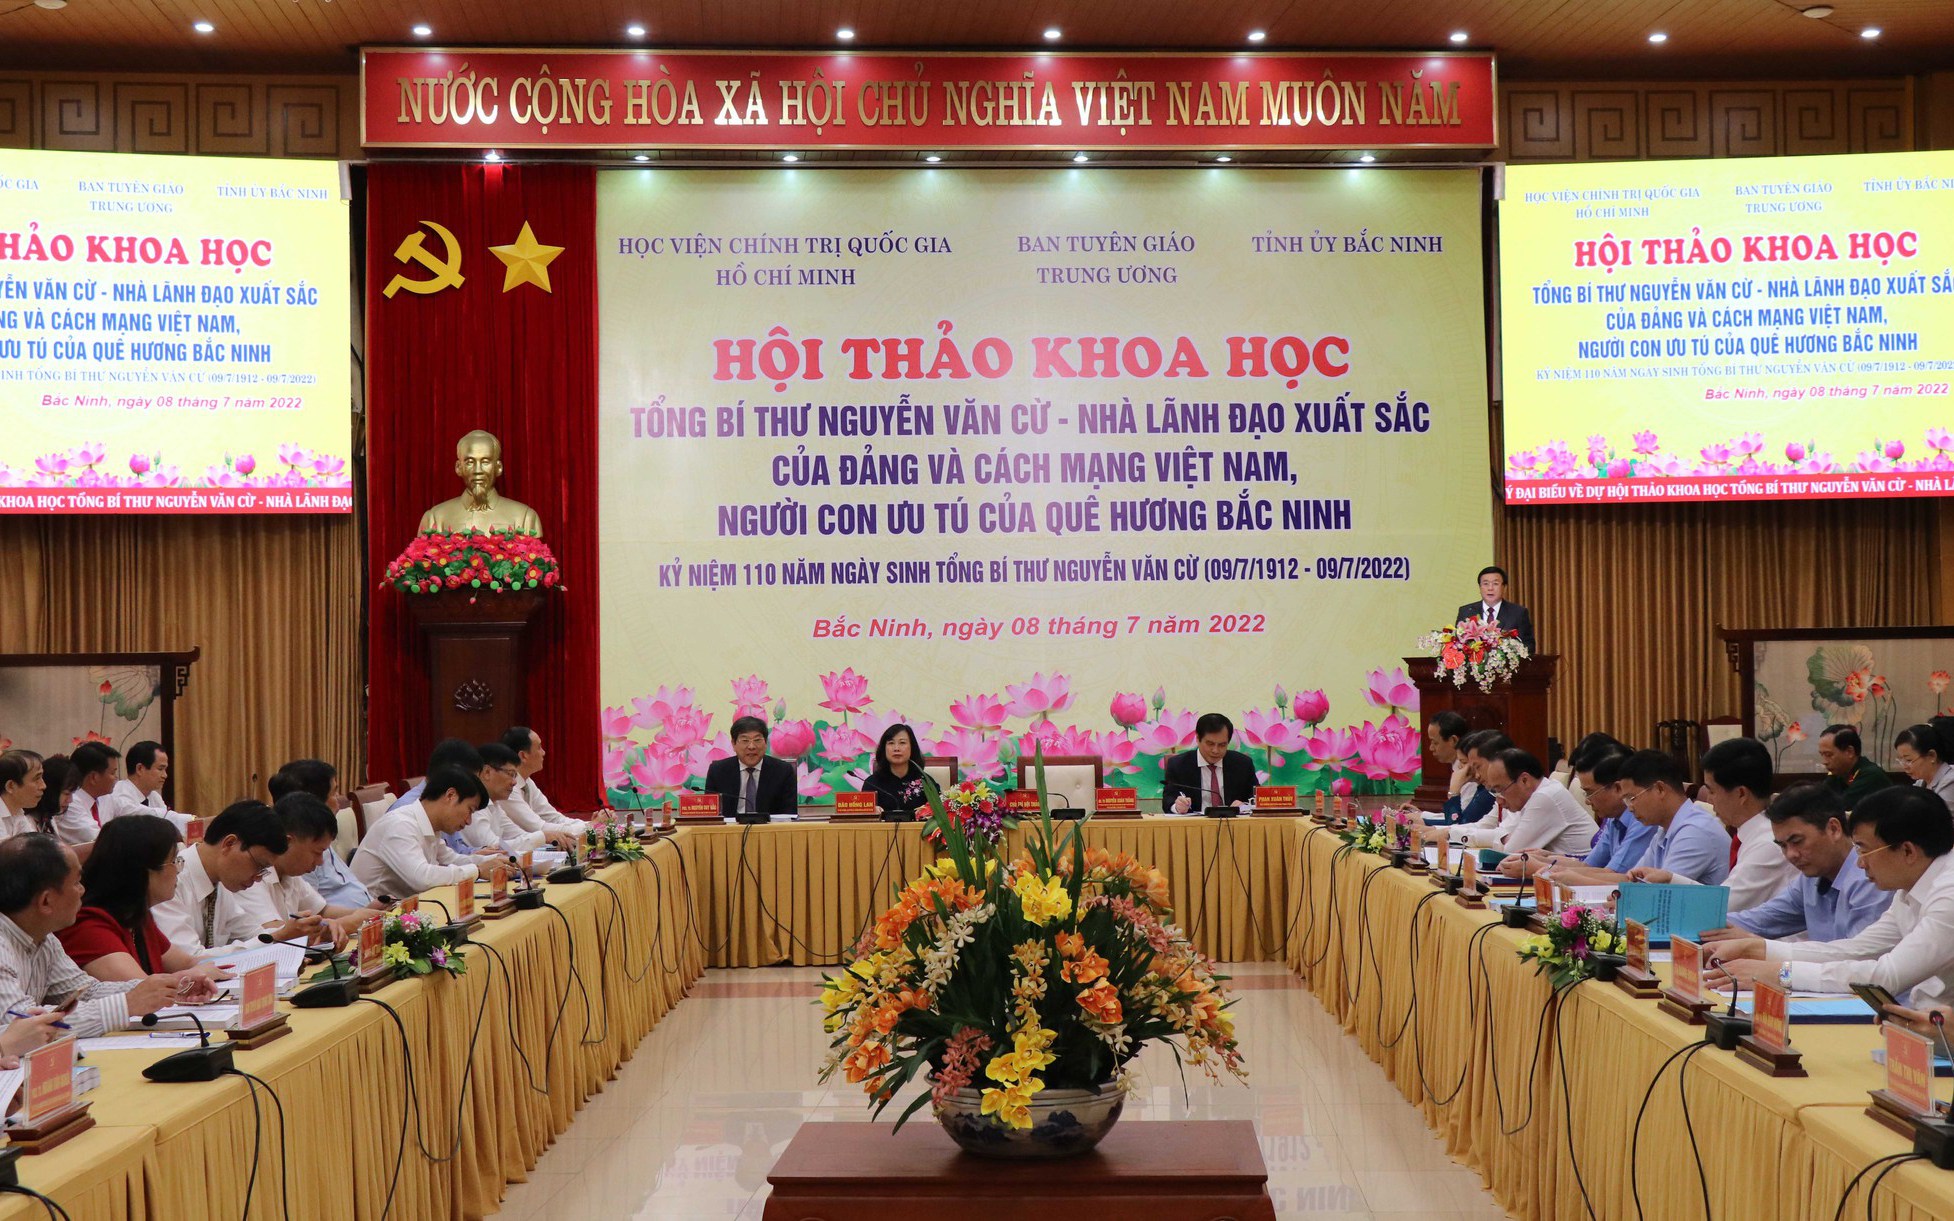 Hội thảo khoa học về cố Tổng Bí thư Nguyễn Văn Cừ, nhà lãnh đạo xuất sắc của Đảng